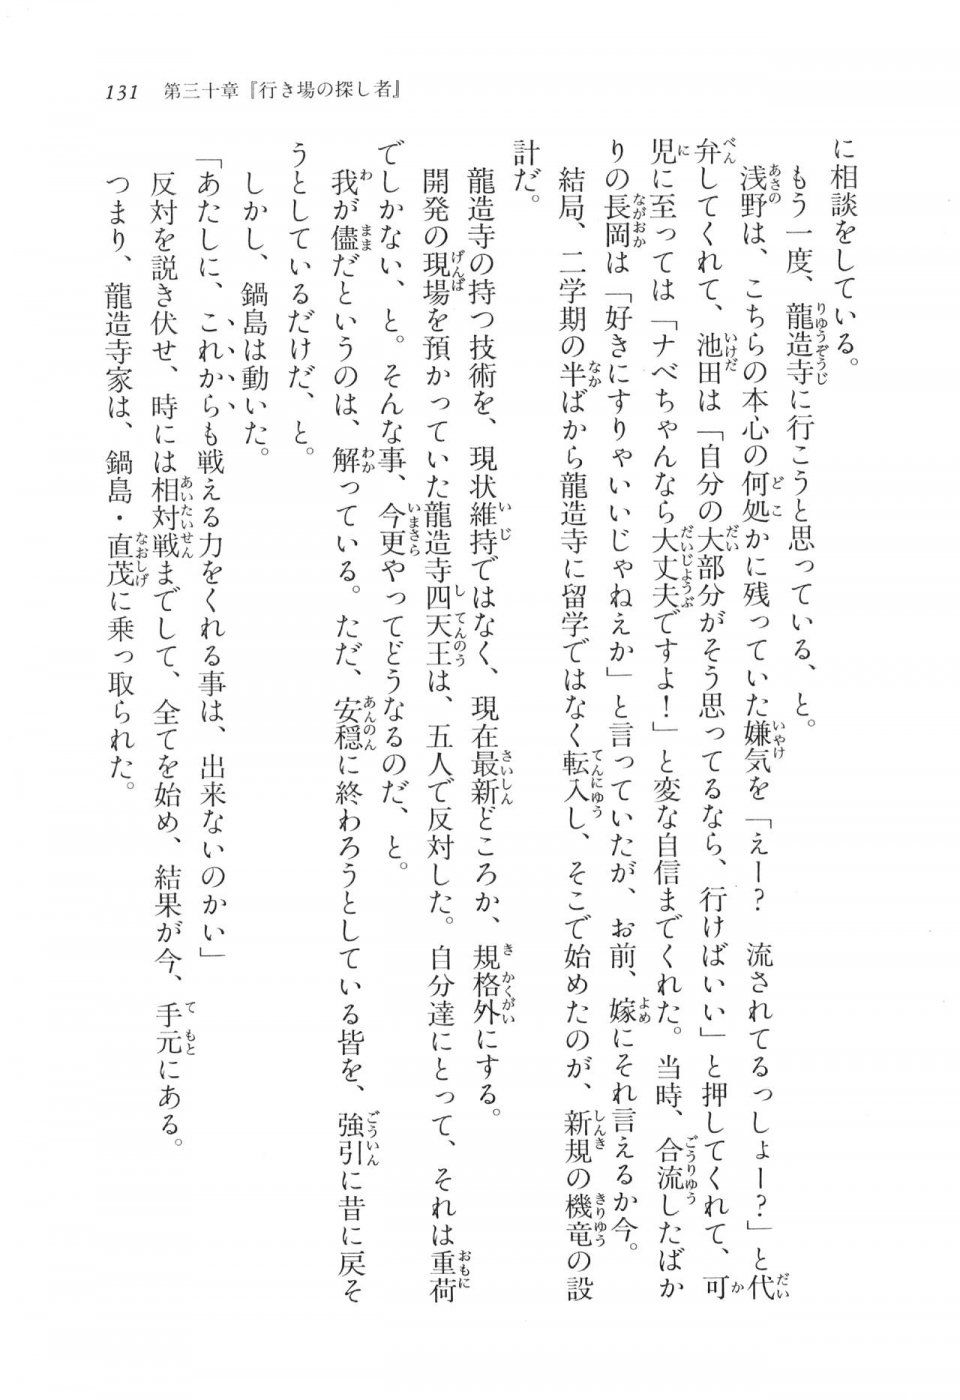 Kyoukai Senjou no Horizon LN Vol 17(7B) - Photo #131